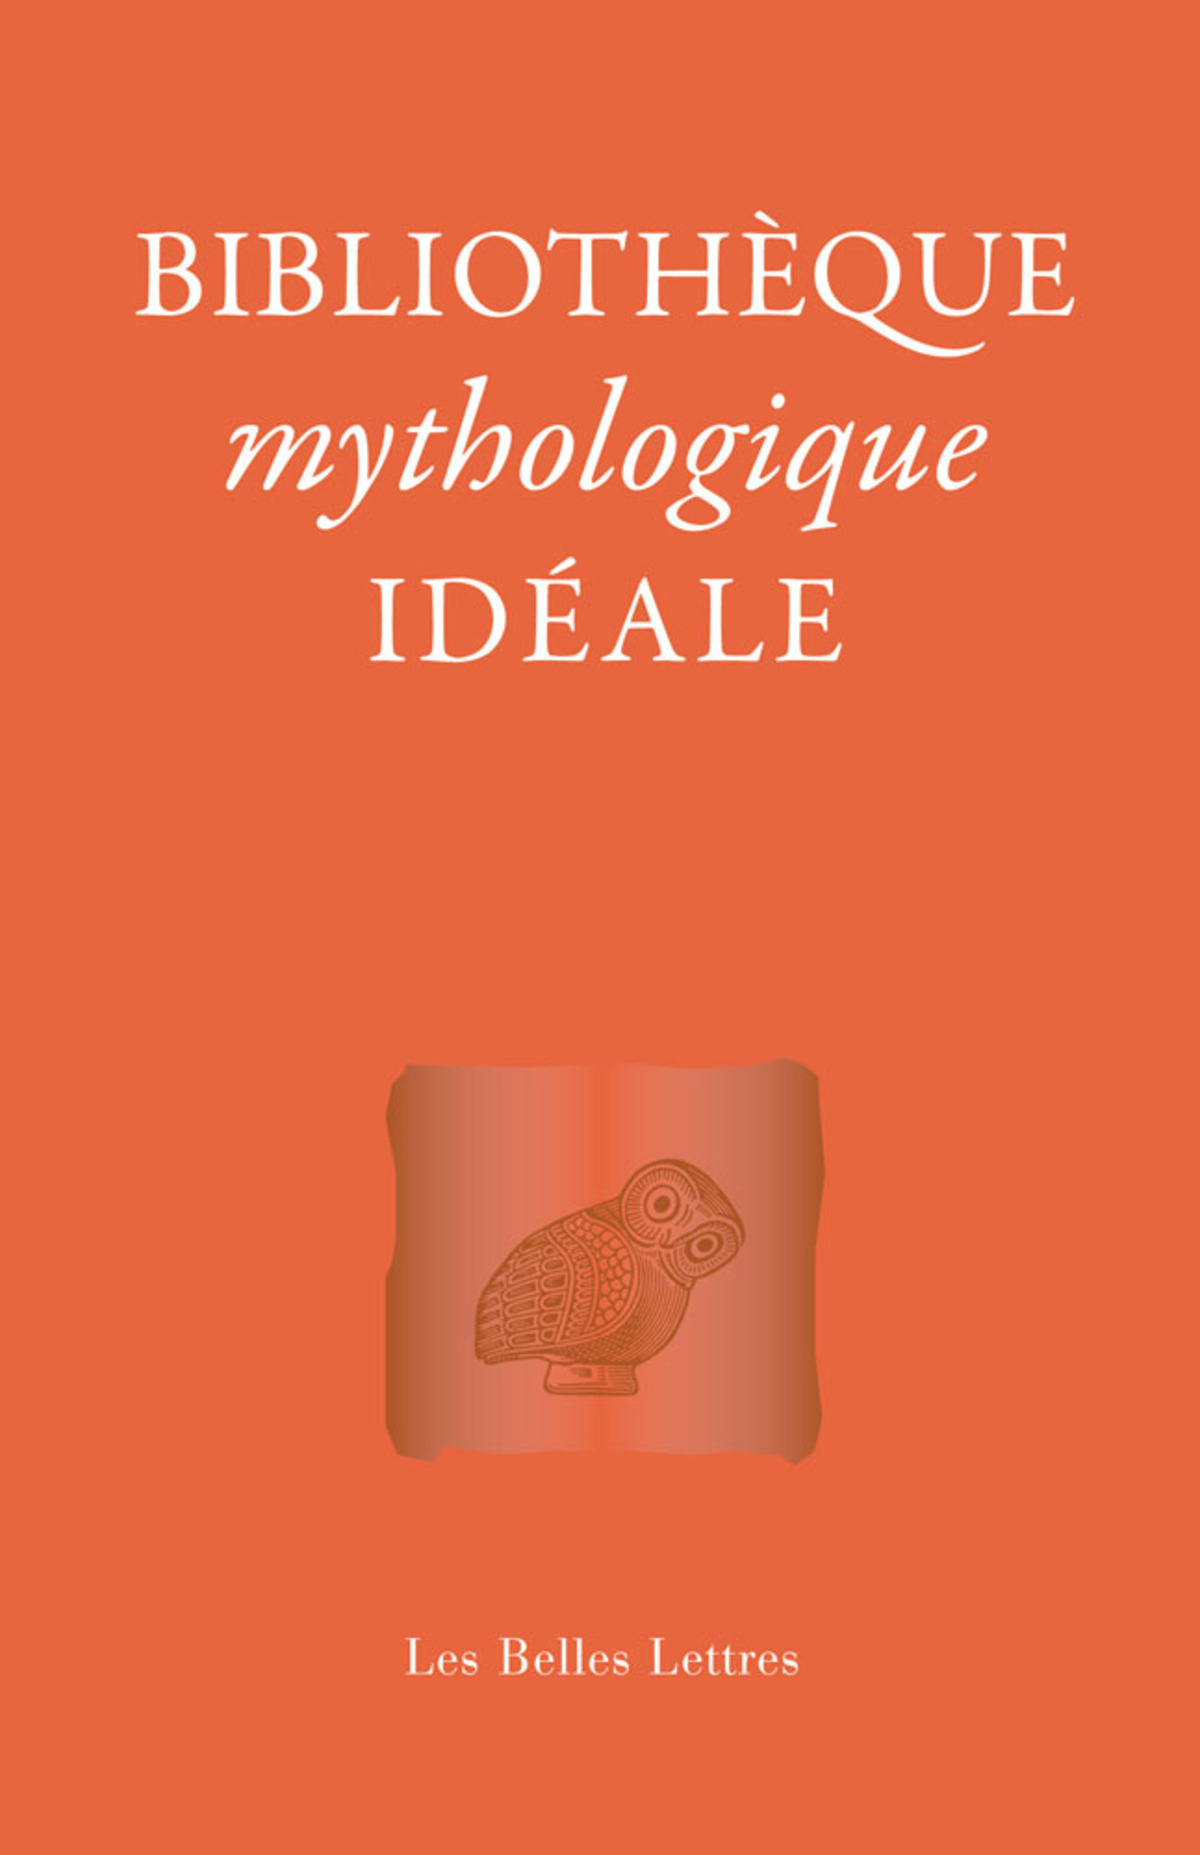 Bibliothèque mythologique idéale